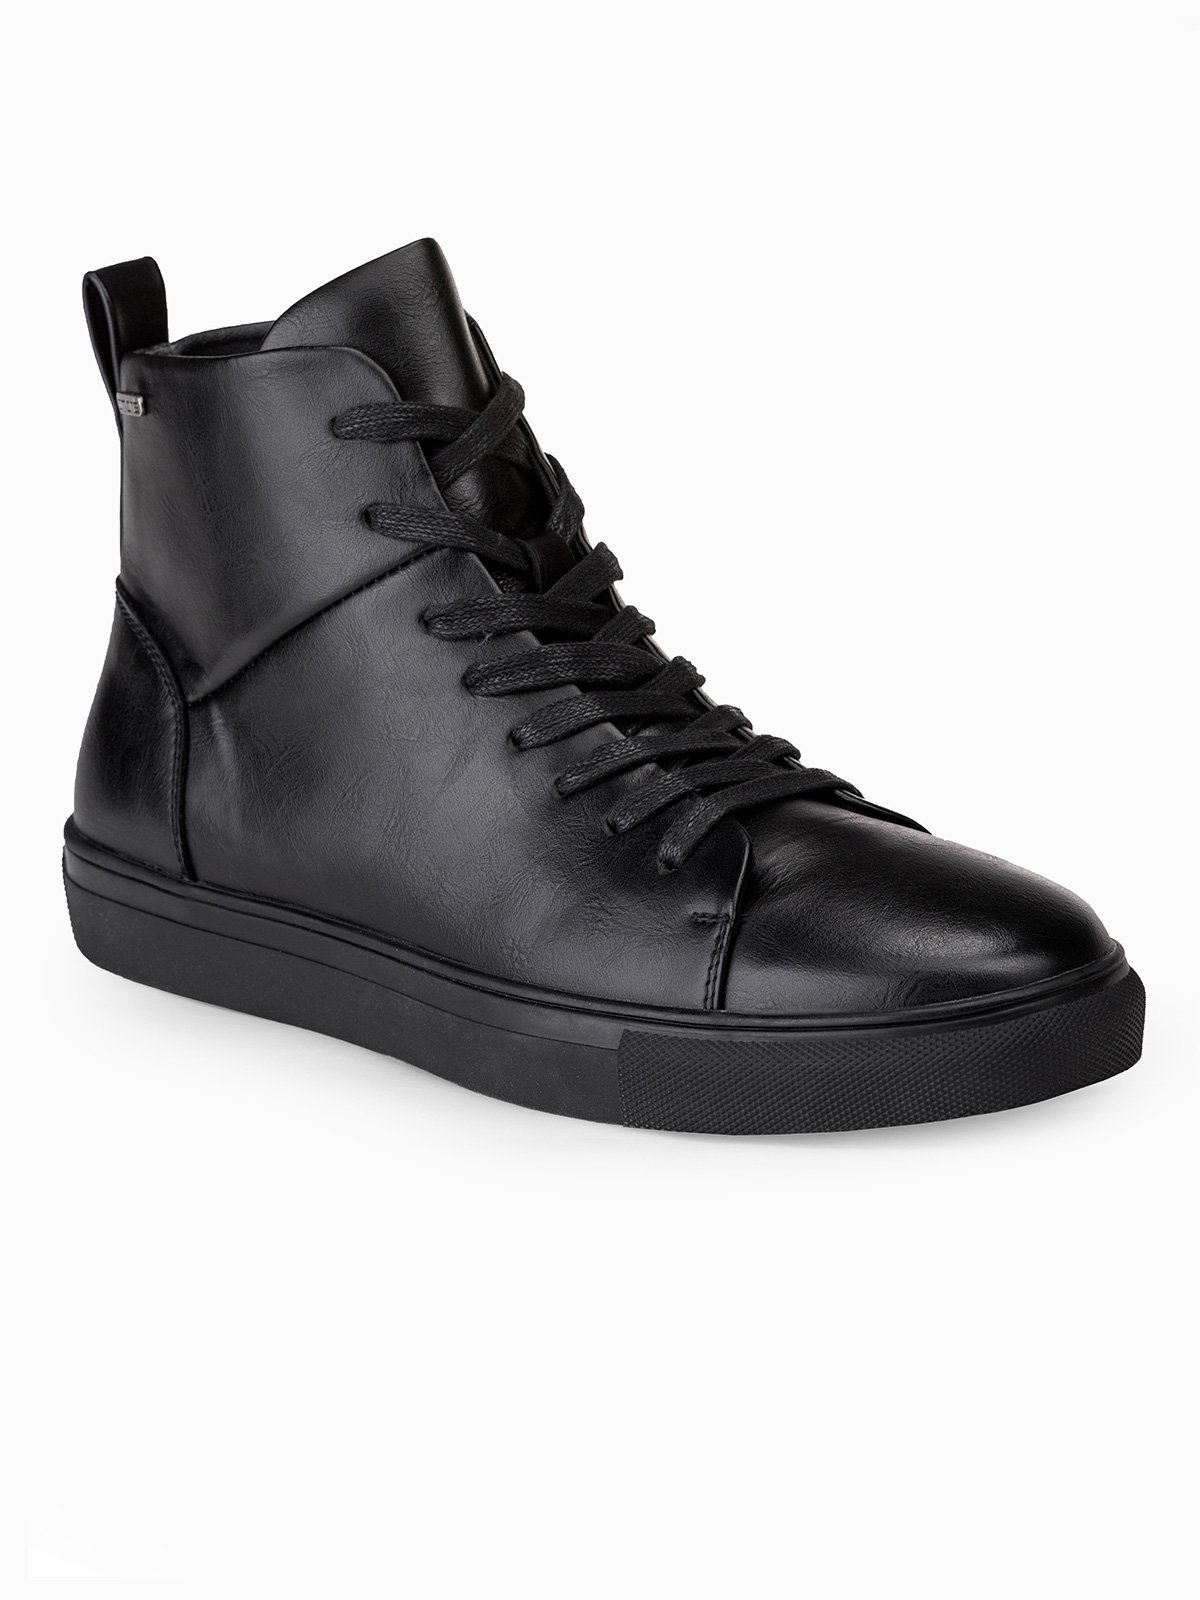 Men's ankle shoes T322 - black | MODONE wholesale - Clothing For Men